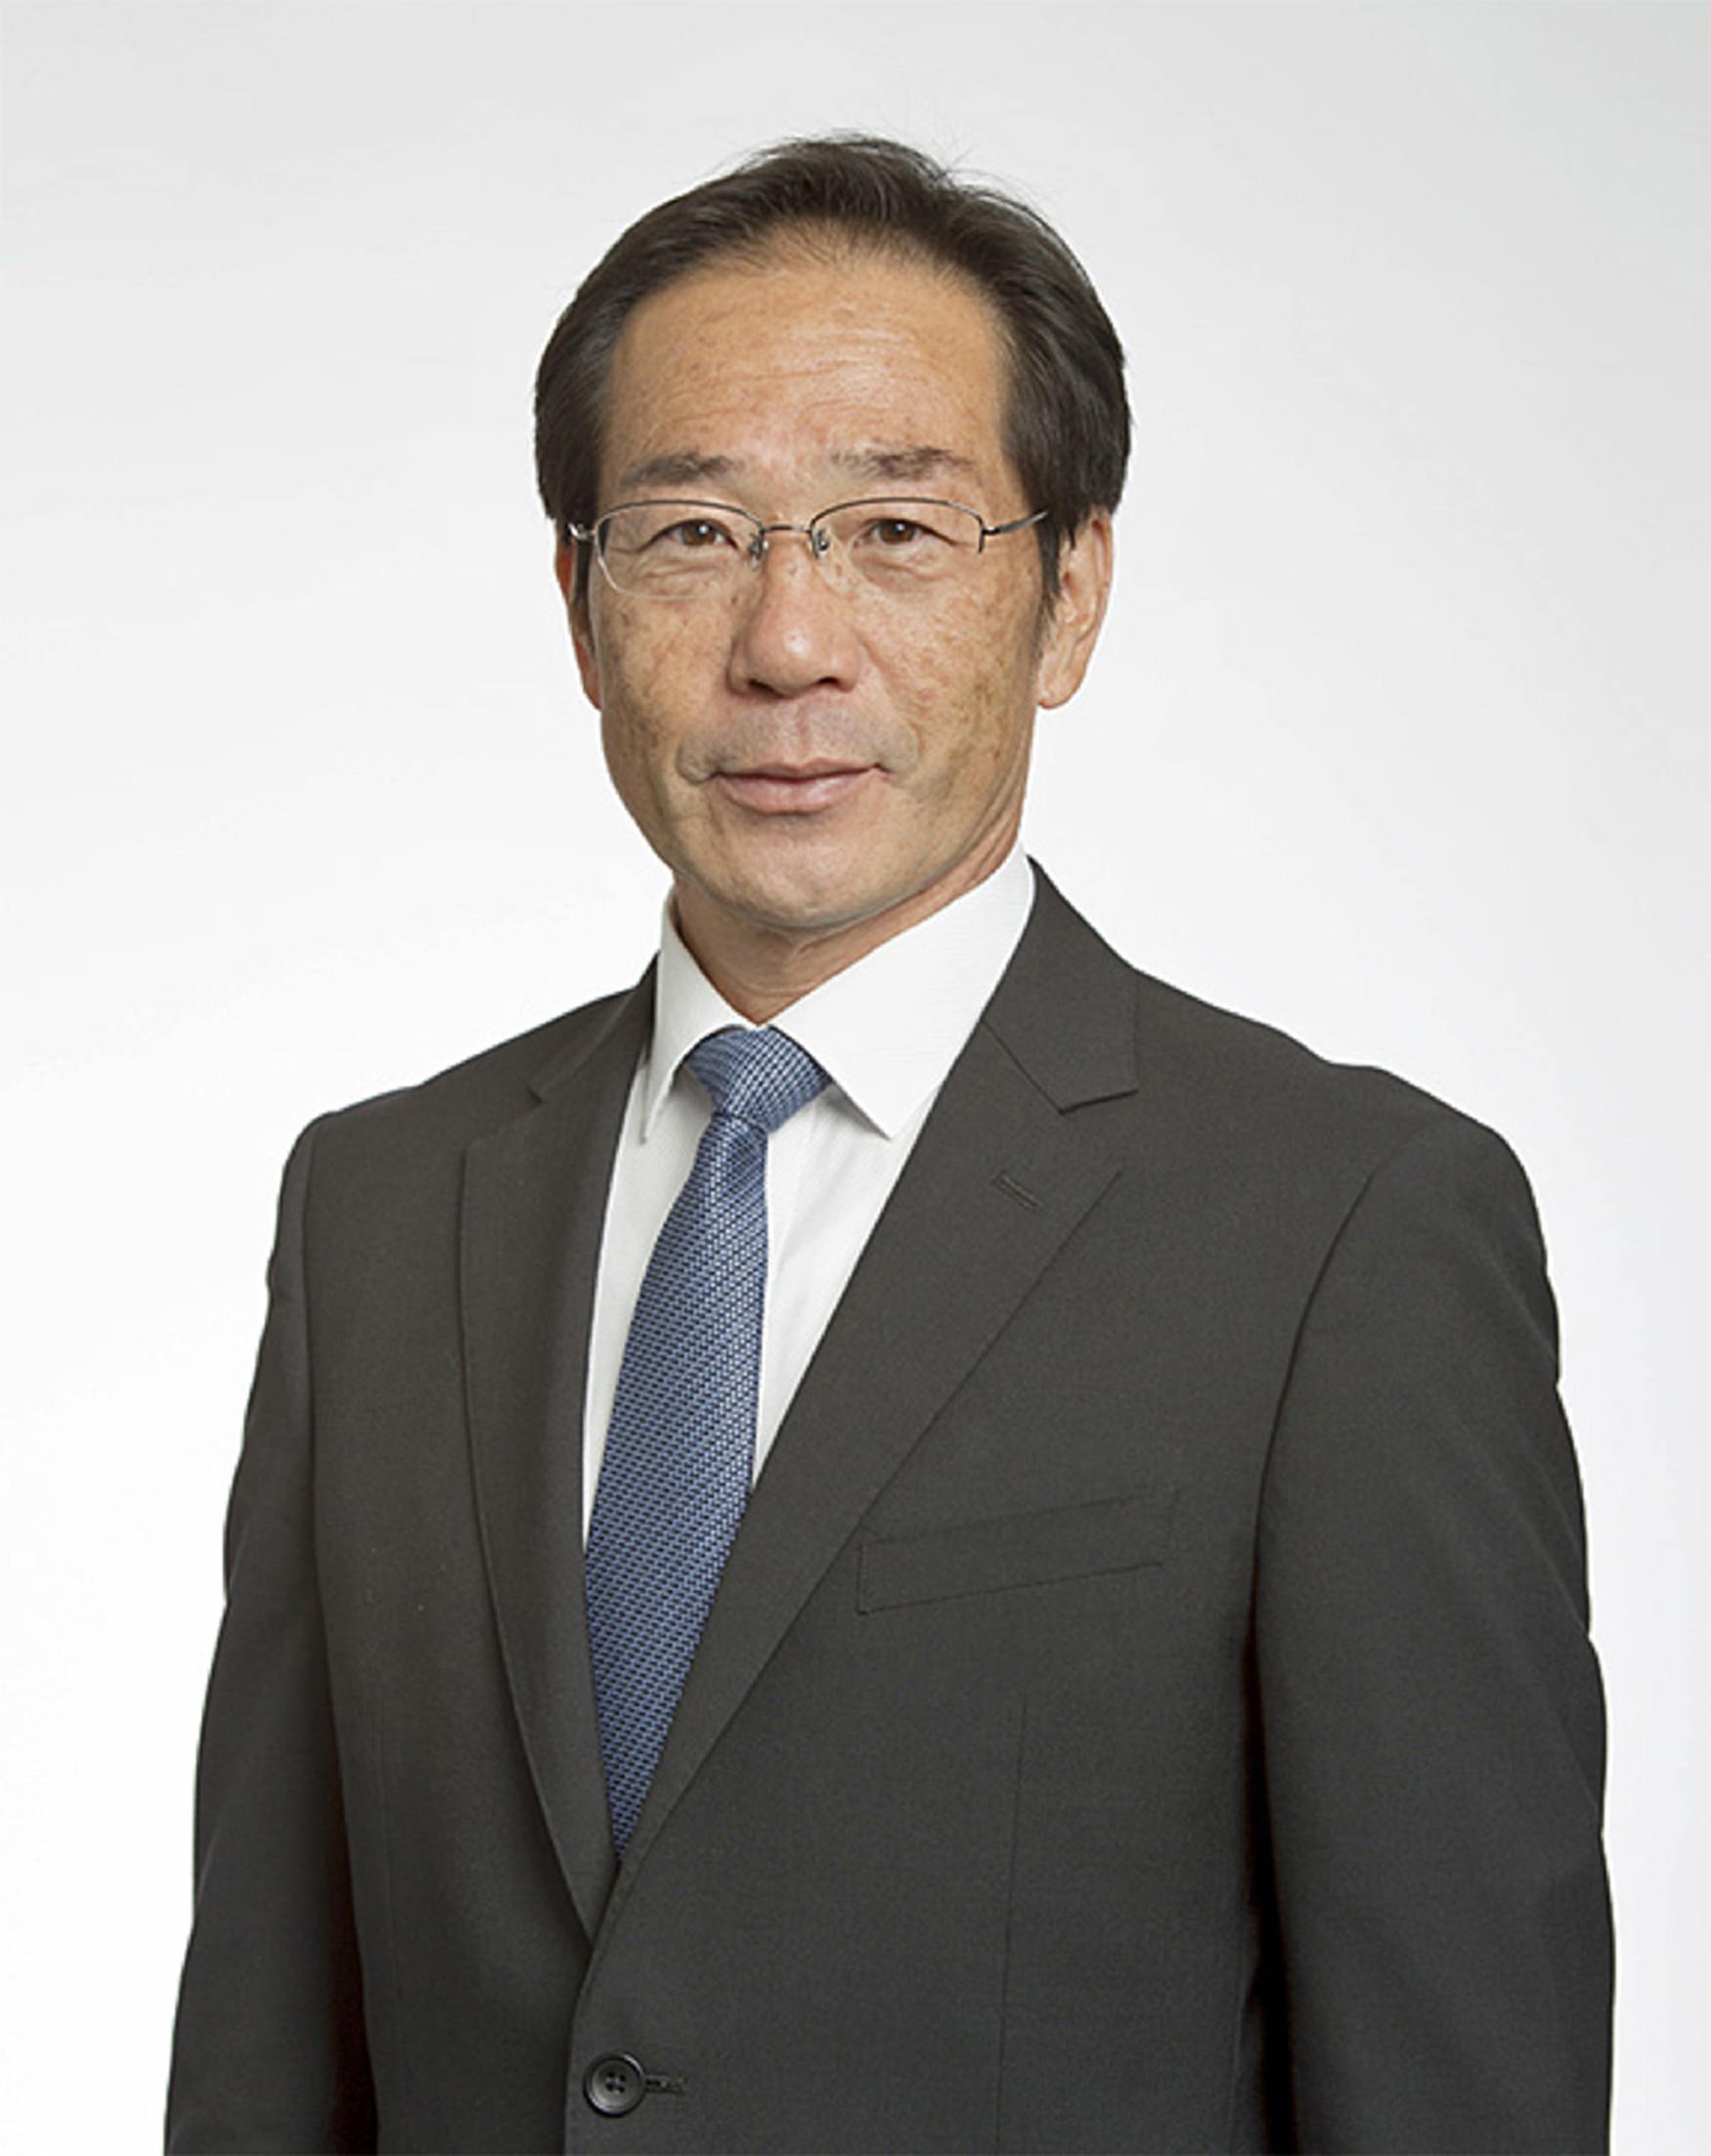 Kazushi Abe, president